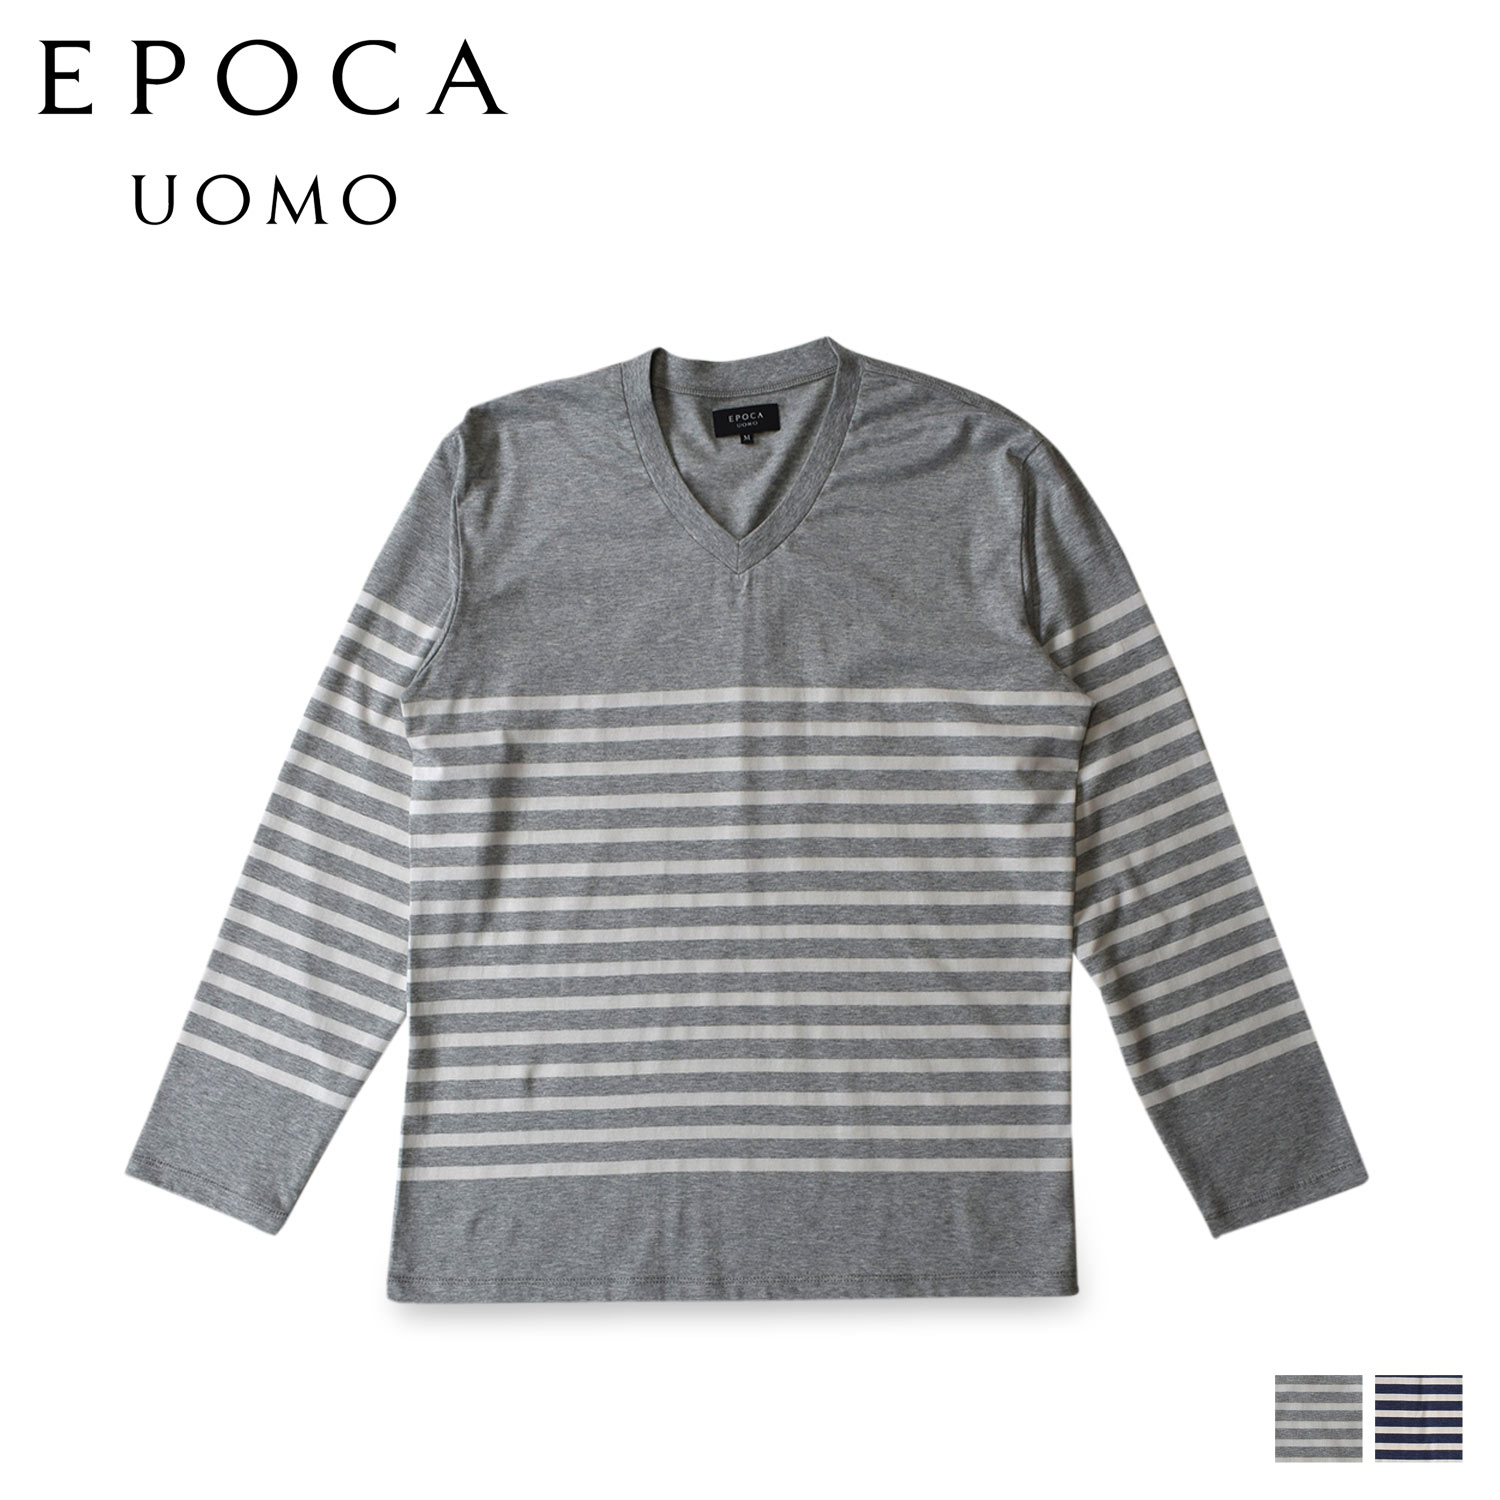 エポカ ウォモ EPOCA UOMO ルームウェア 部屋着 パジャマ ナイトウェア メンズ 暖かい 上着 天竺 Vネックロングスリーブシャツ ヘザー グレー ネイビー 0370-27